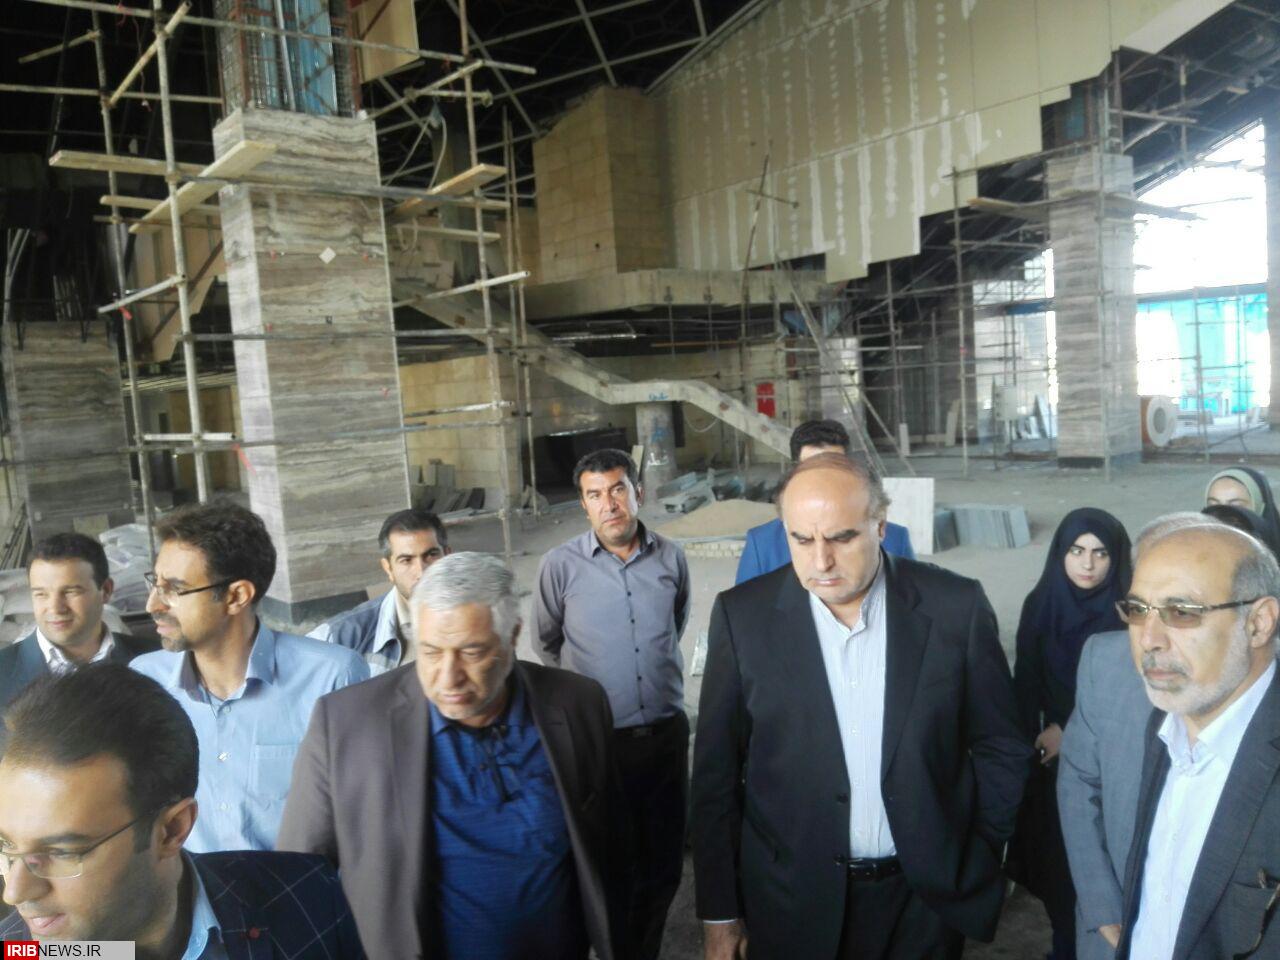 سفررییس جمهور پس از ماه رمضان برای افتتاح راه آهن به کرمانشاه